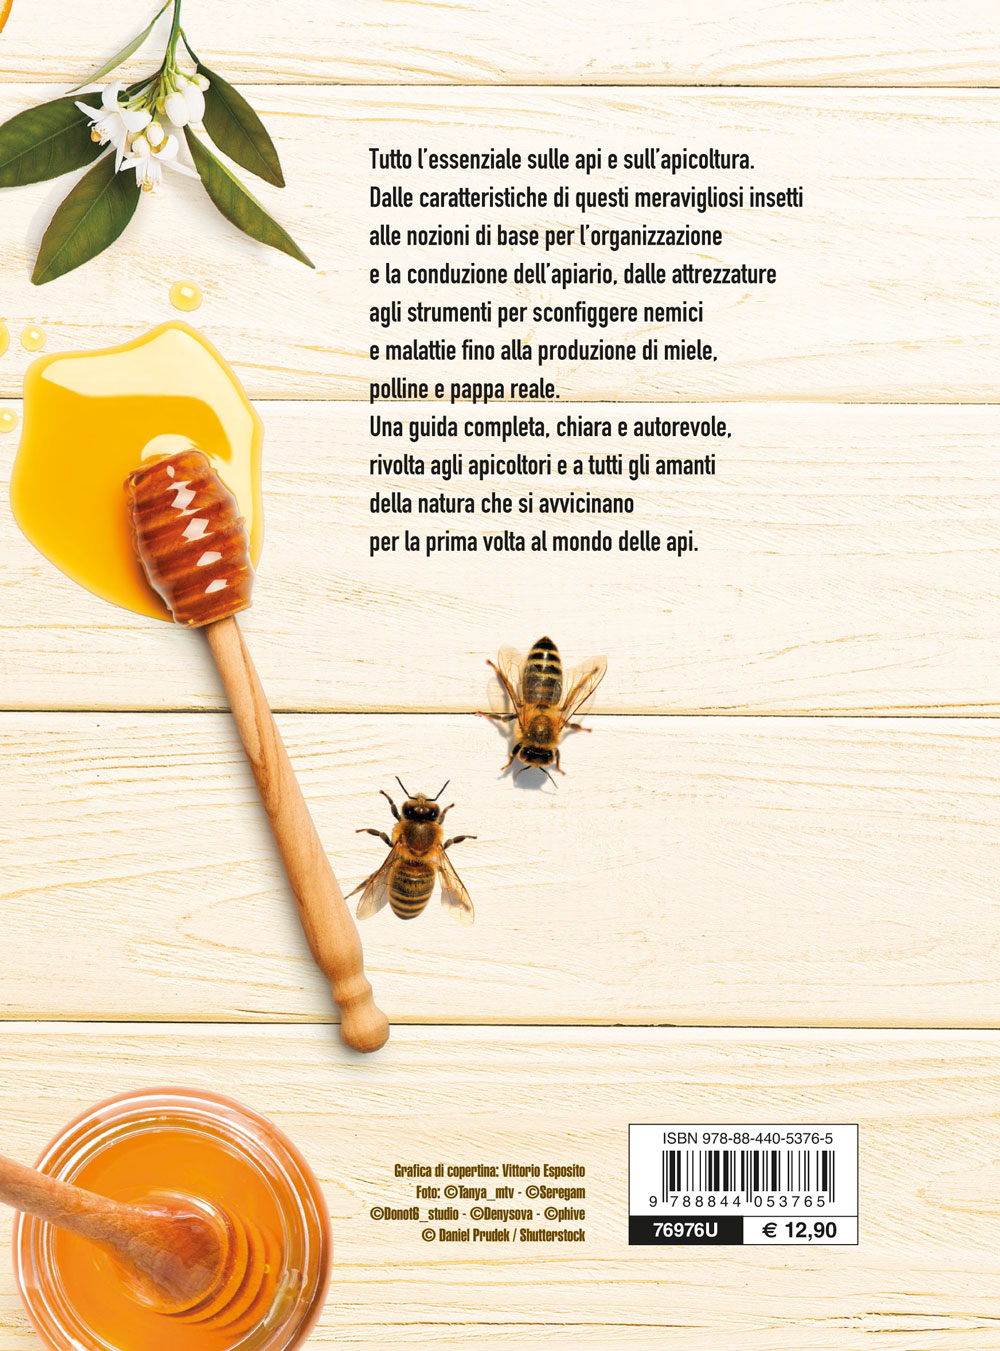 Il libro del miele